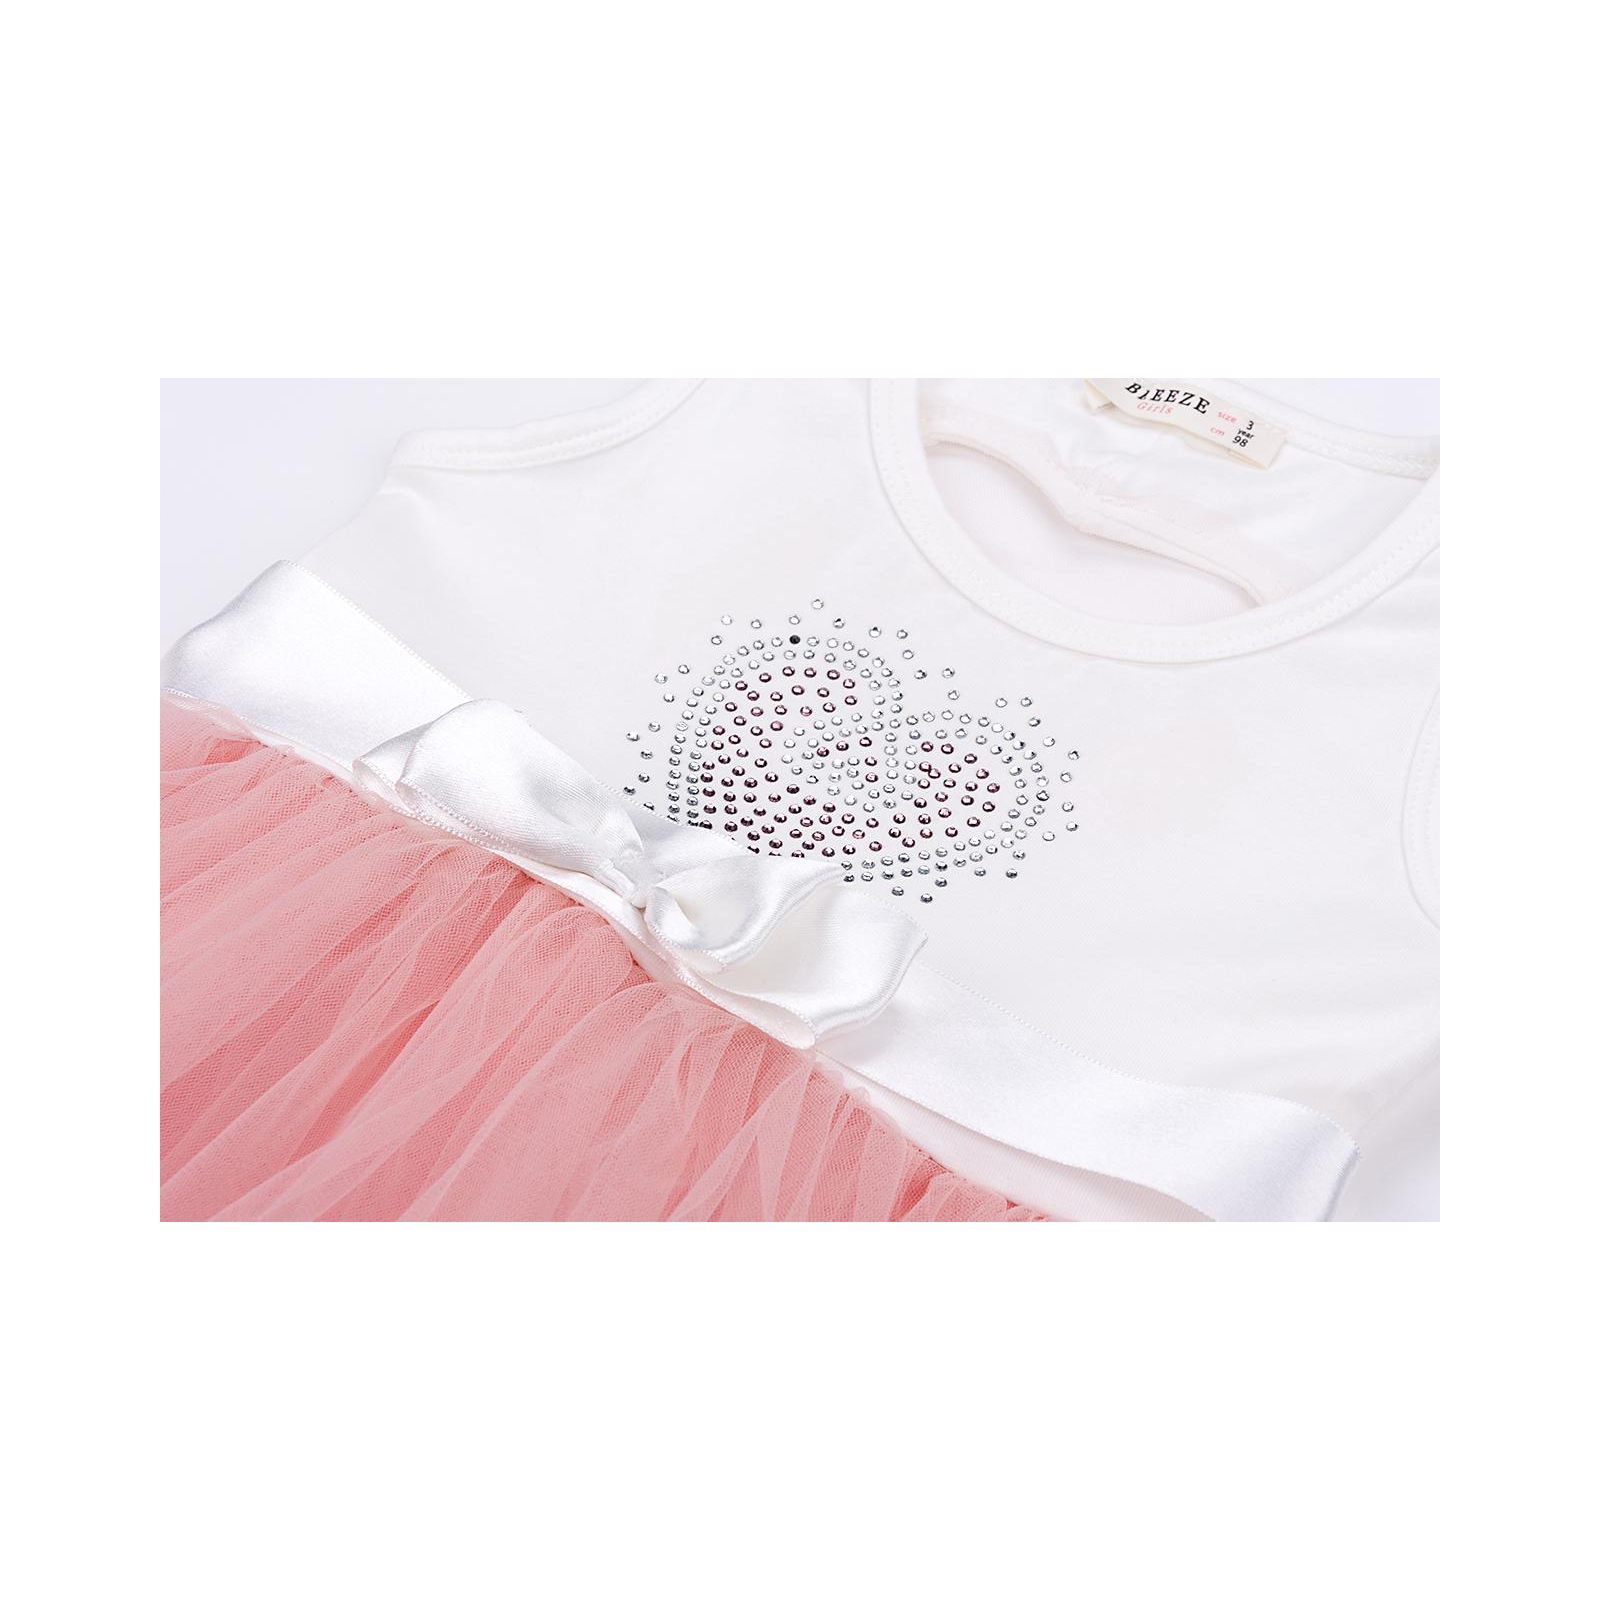 Платье Breeze сарафан с фатиновой юбкой и сердцем (10862-98G-pink) изображение 5